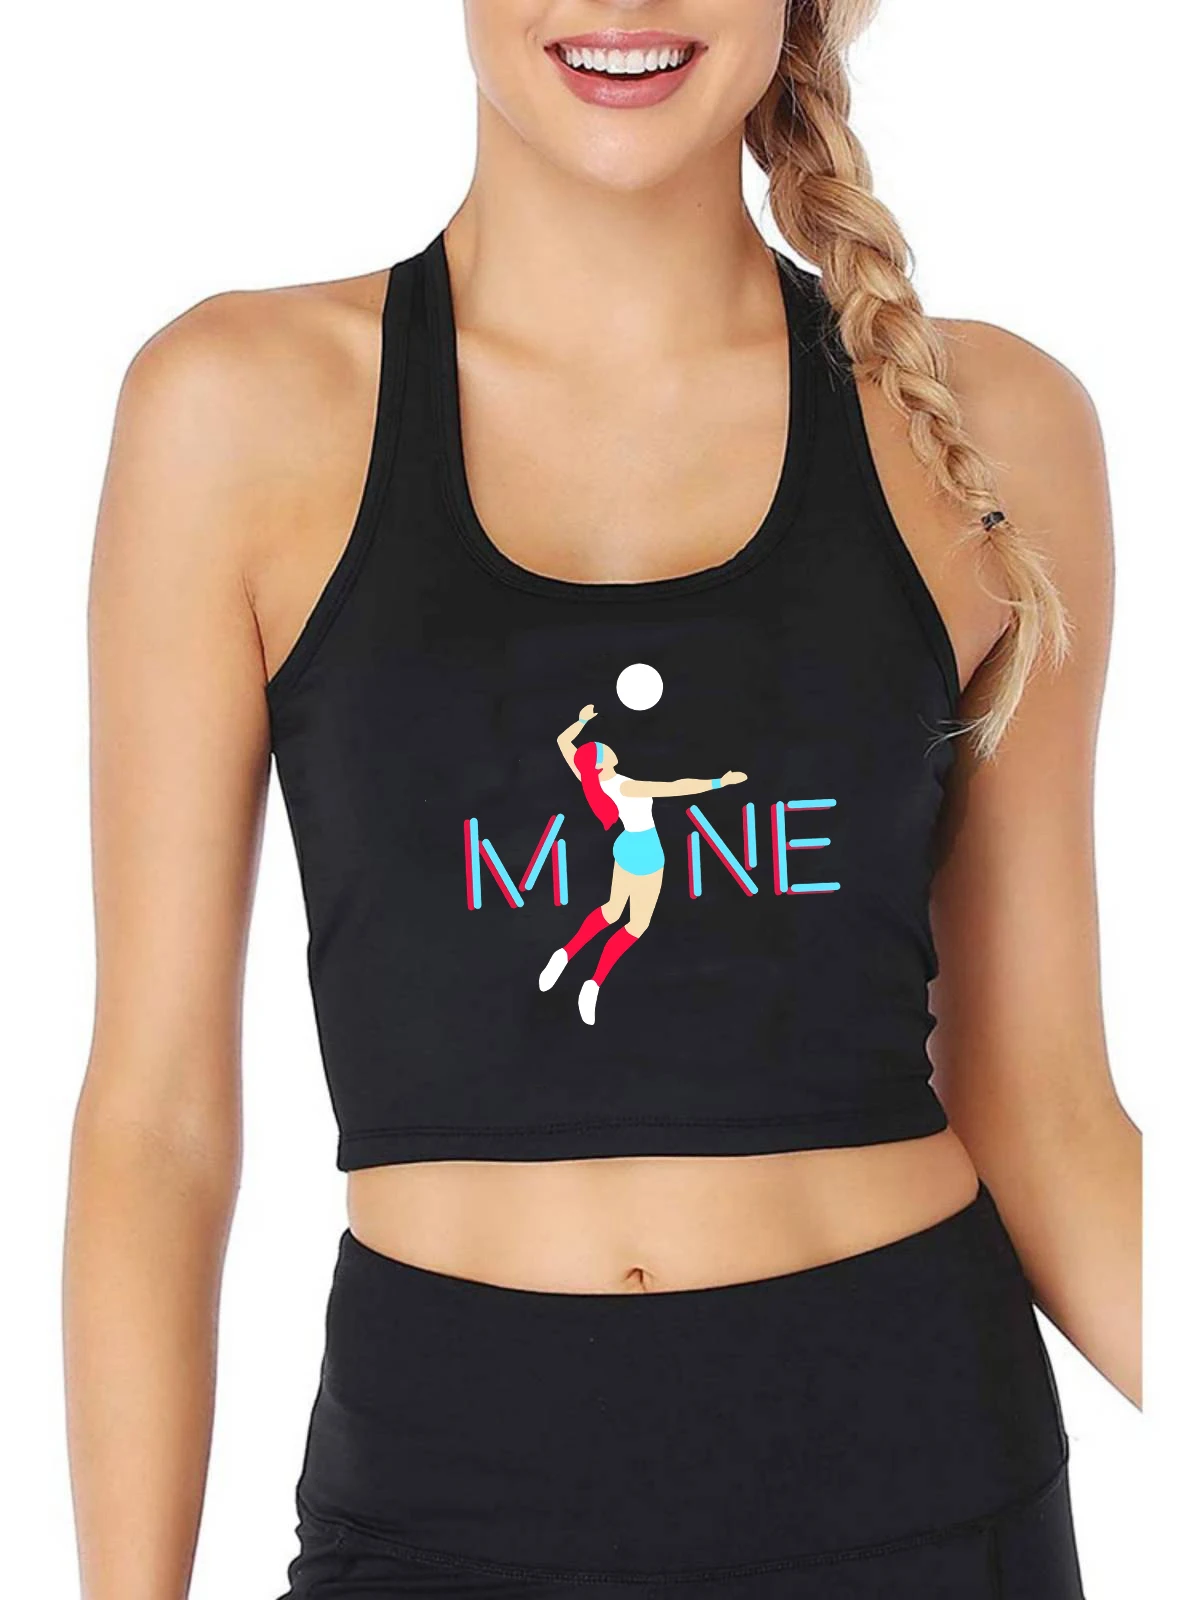 

Кроп-Топ женский для волейбола, пикантный спортивный облегающий топ для волейбола, для занятий спортом на открытом воздухе, летняя модель